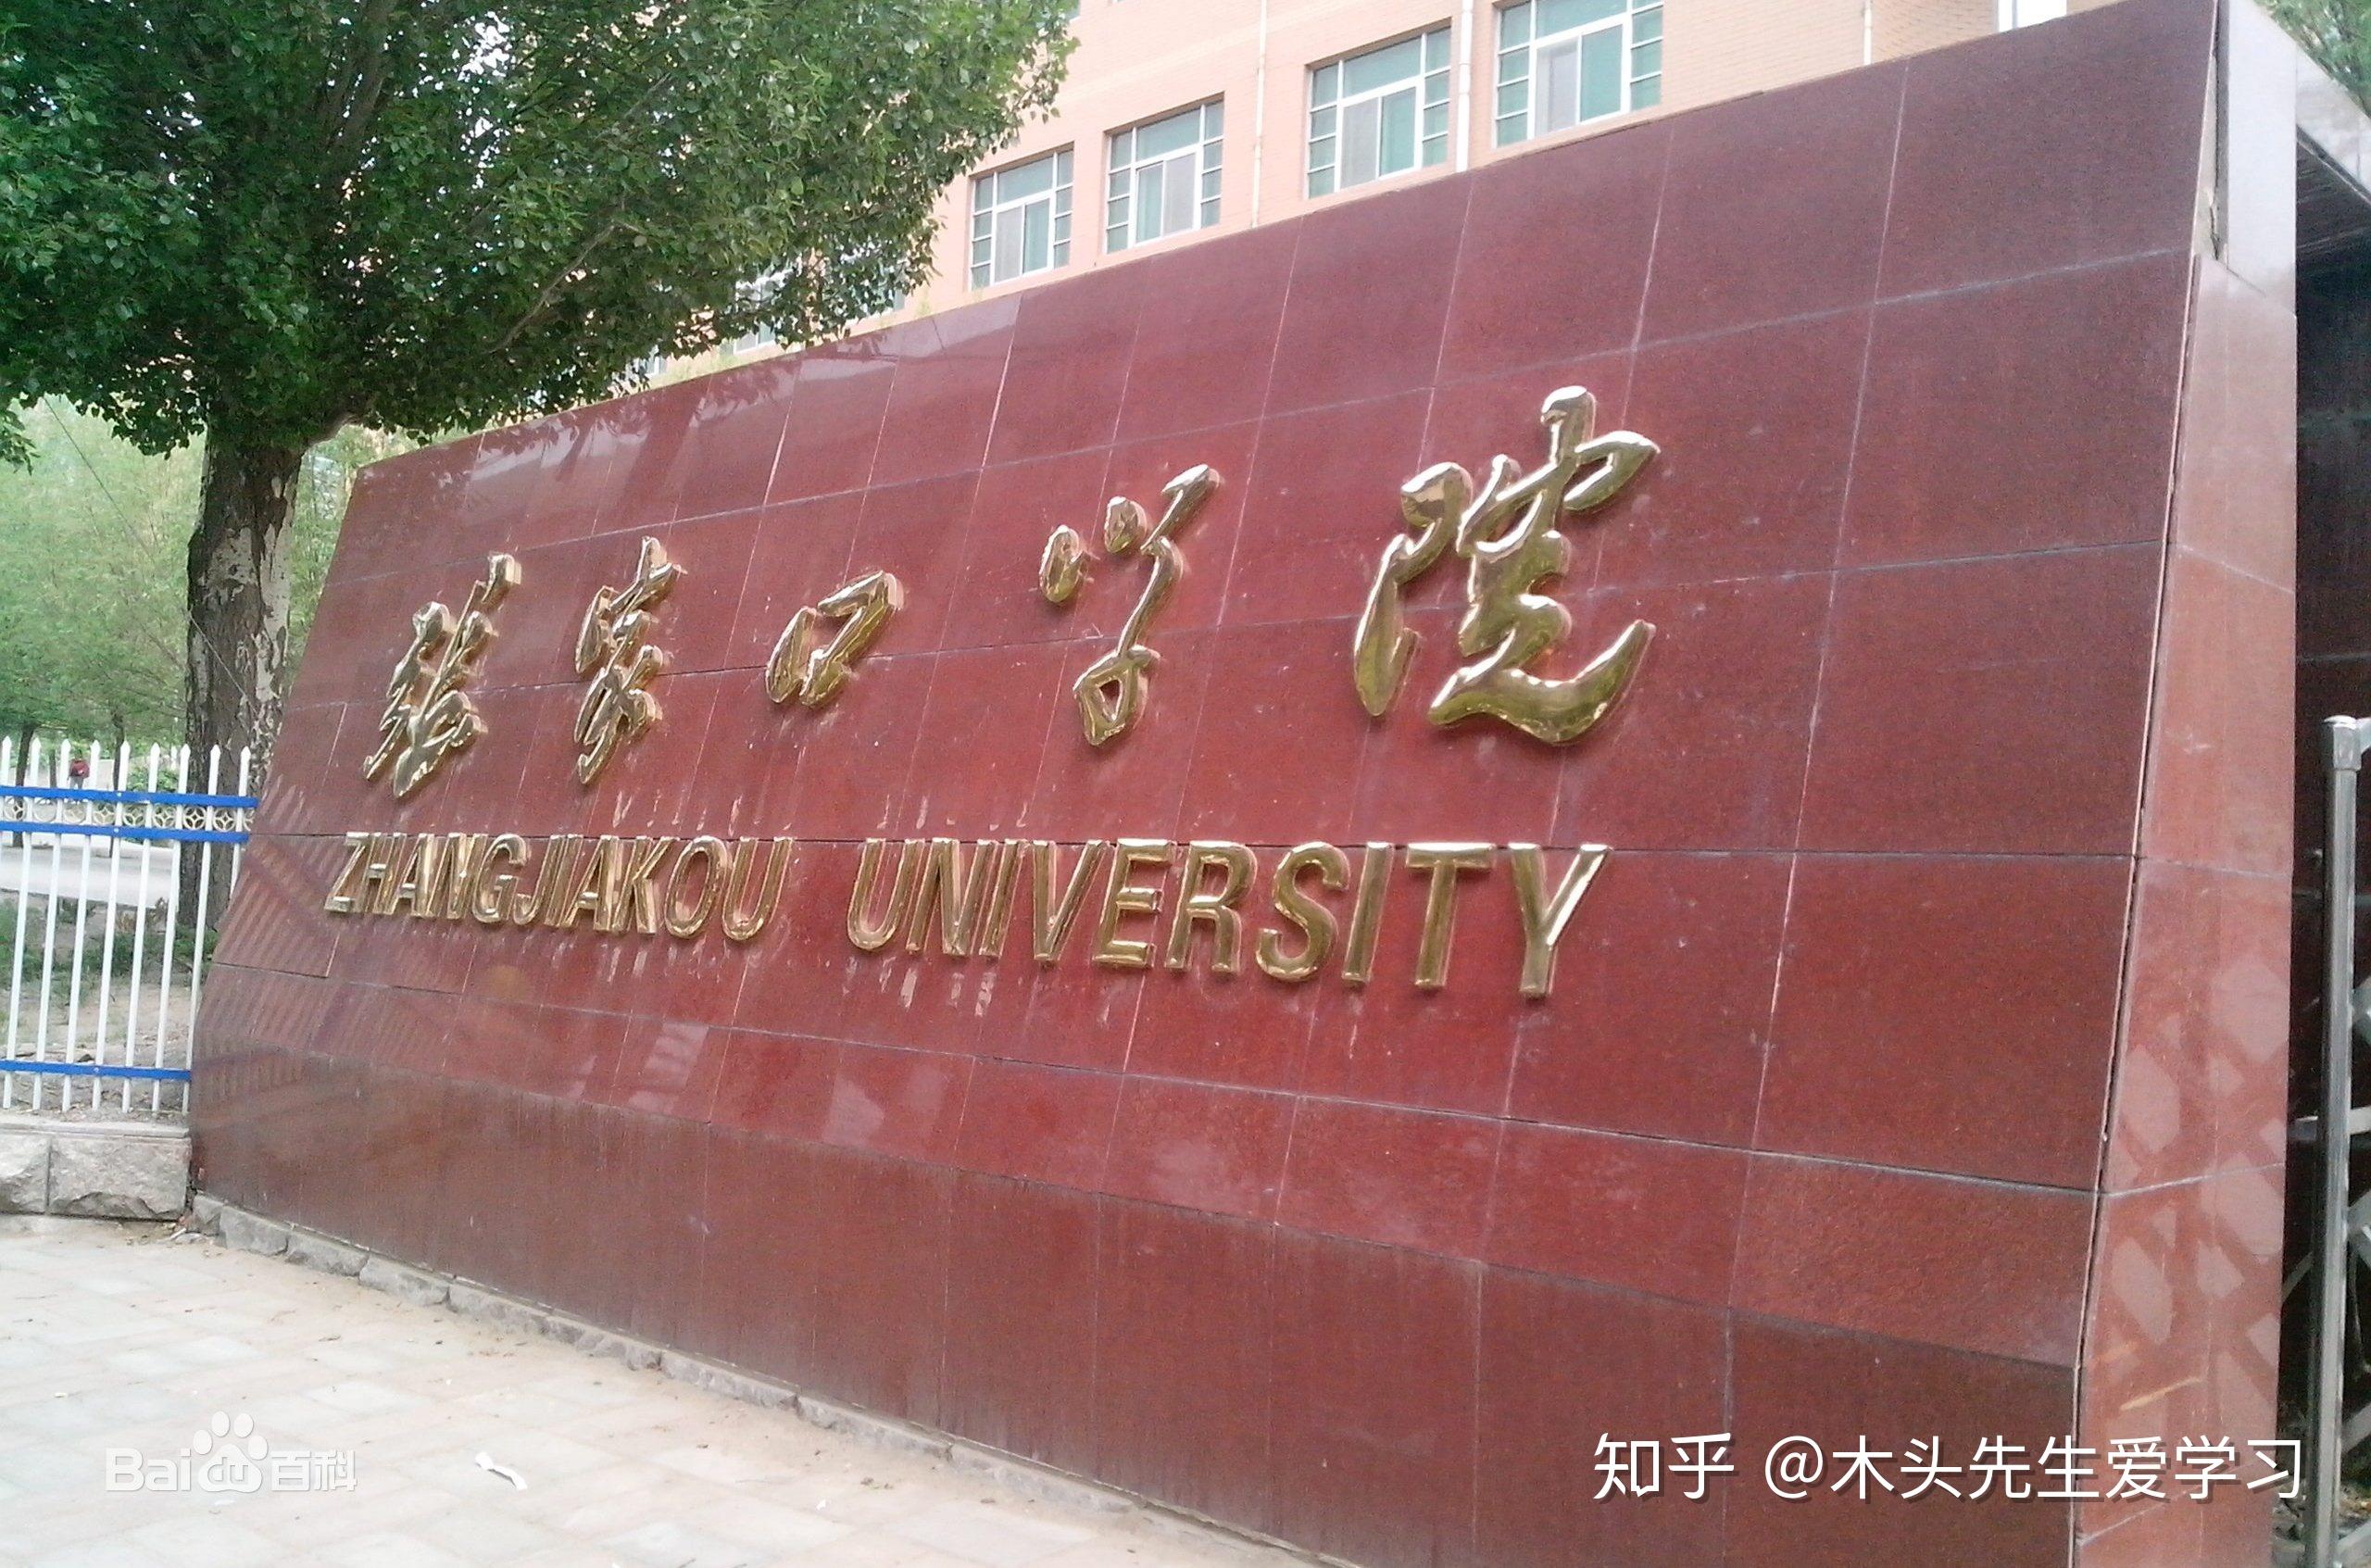 张家口学院(zhangjiakou university)位于河北省张家口市,是河北省属